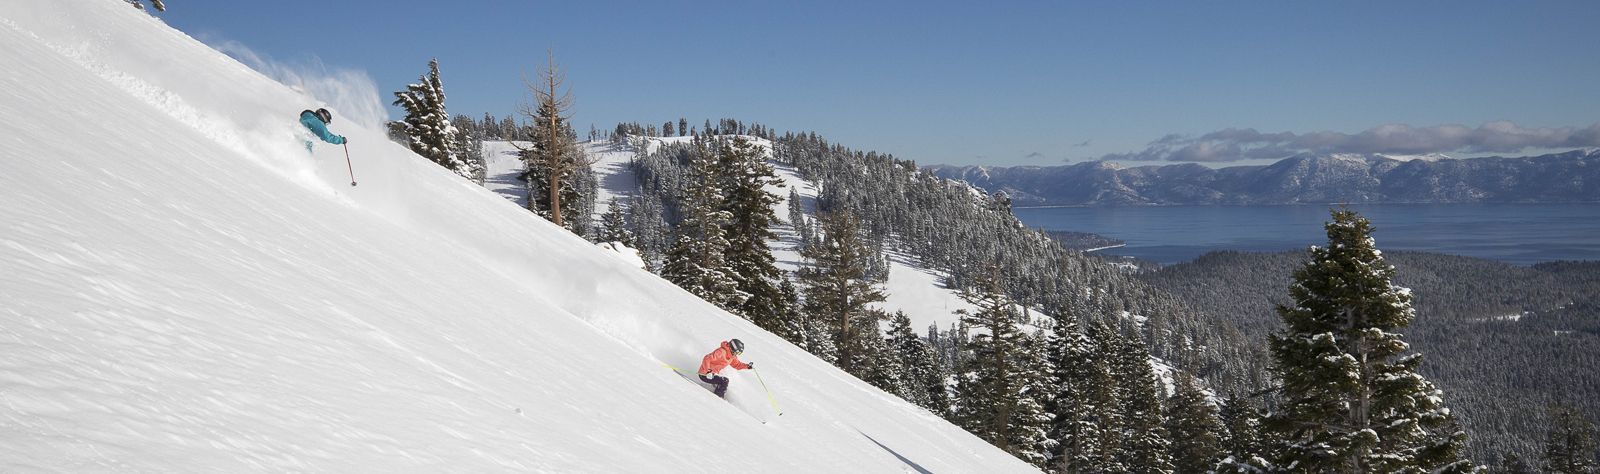 Palisades Tahoe Ski Holidays